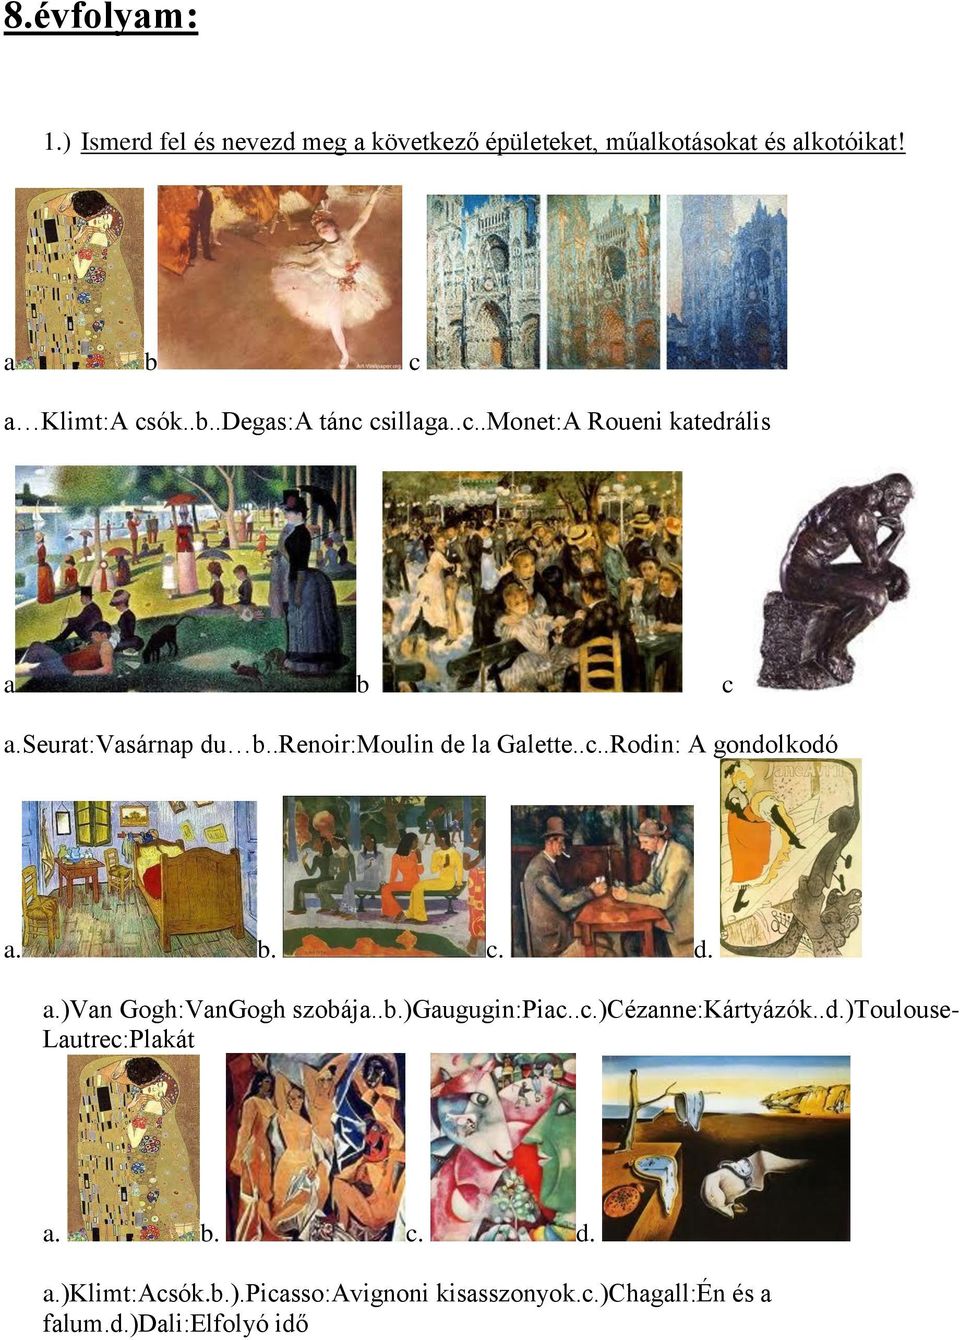 .renoir:moulin de la Galette..c..Rodin: A gondolkodó a. b. c. d. a.)van Gogh:VanGogh szobája..b.)gaugugin:piac..c.)cézanne:kártyázók.